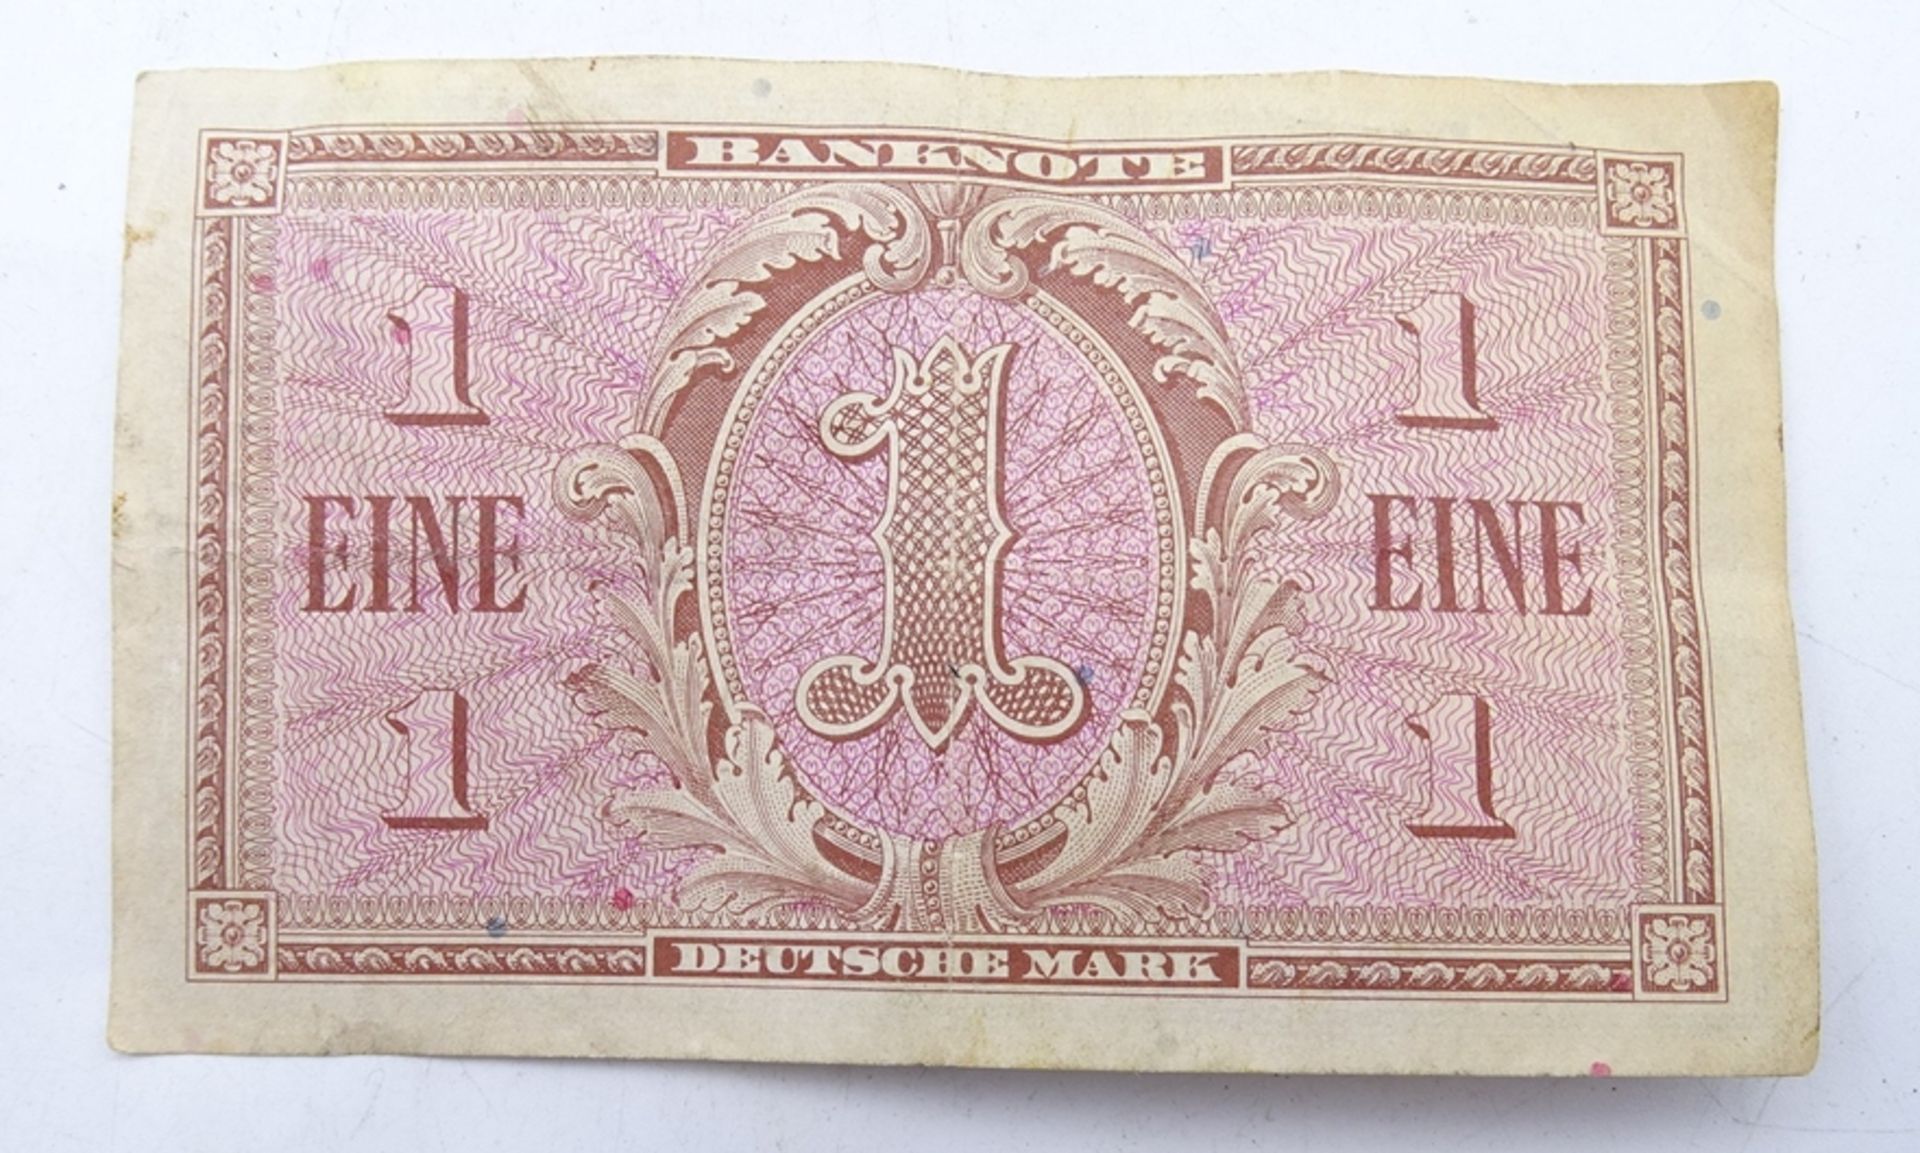 Banknote Eine Deutsche Mark Serie 1948 - Bild 2 aus 2